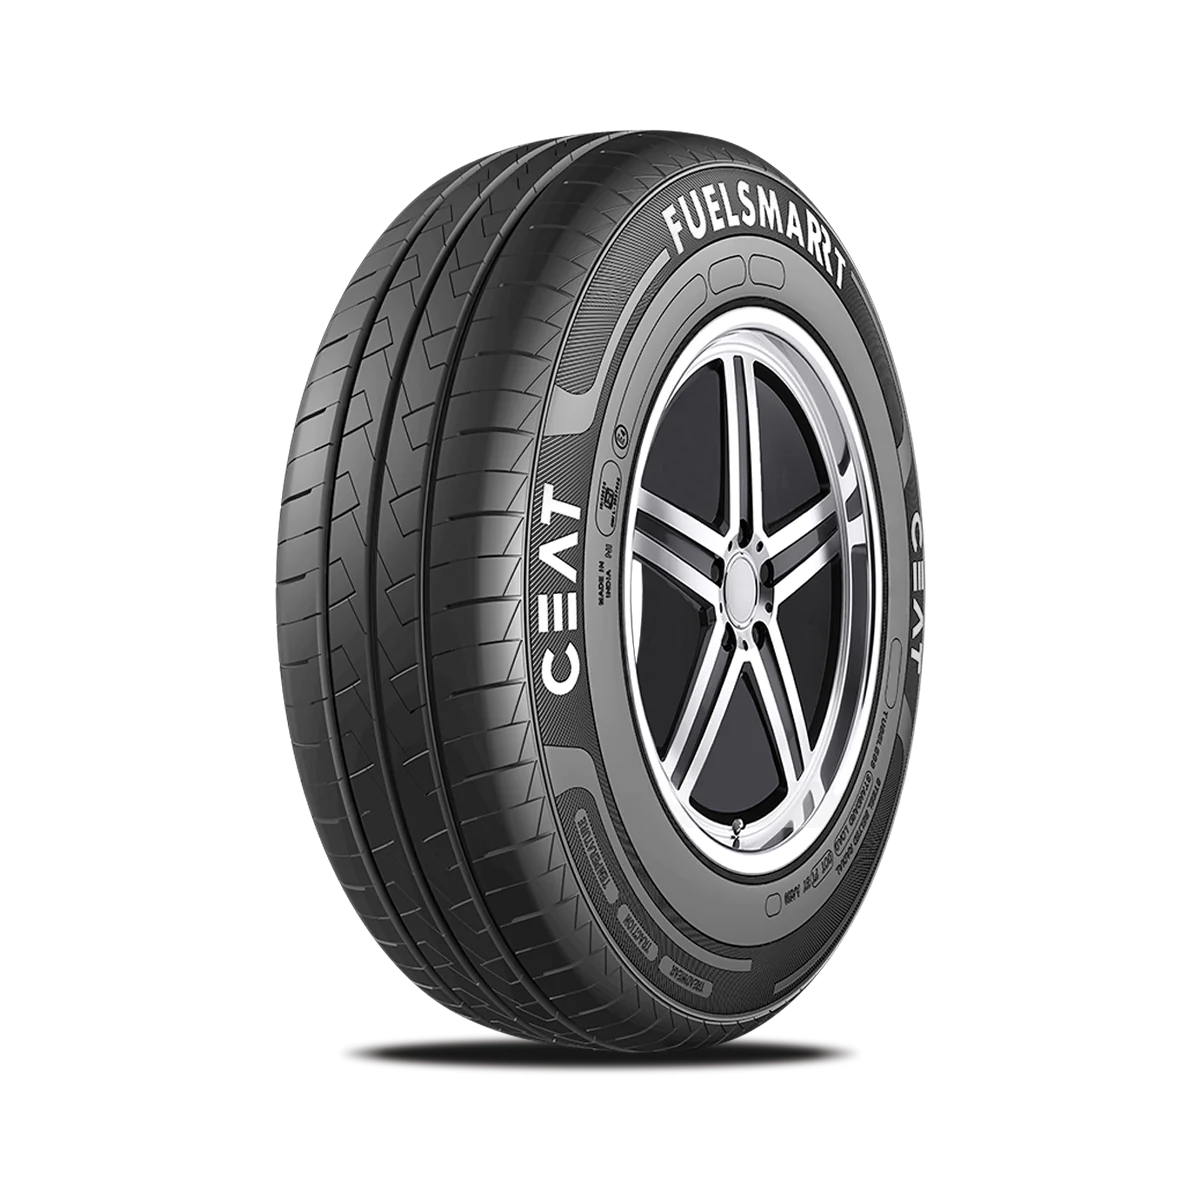 Ceat Ceat 165/65 R13 77H Fuel Efficient pneumatici nuovi Estivo 